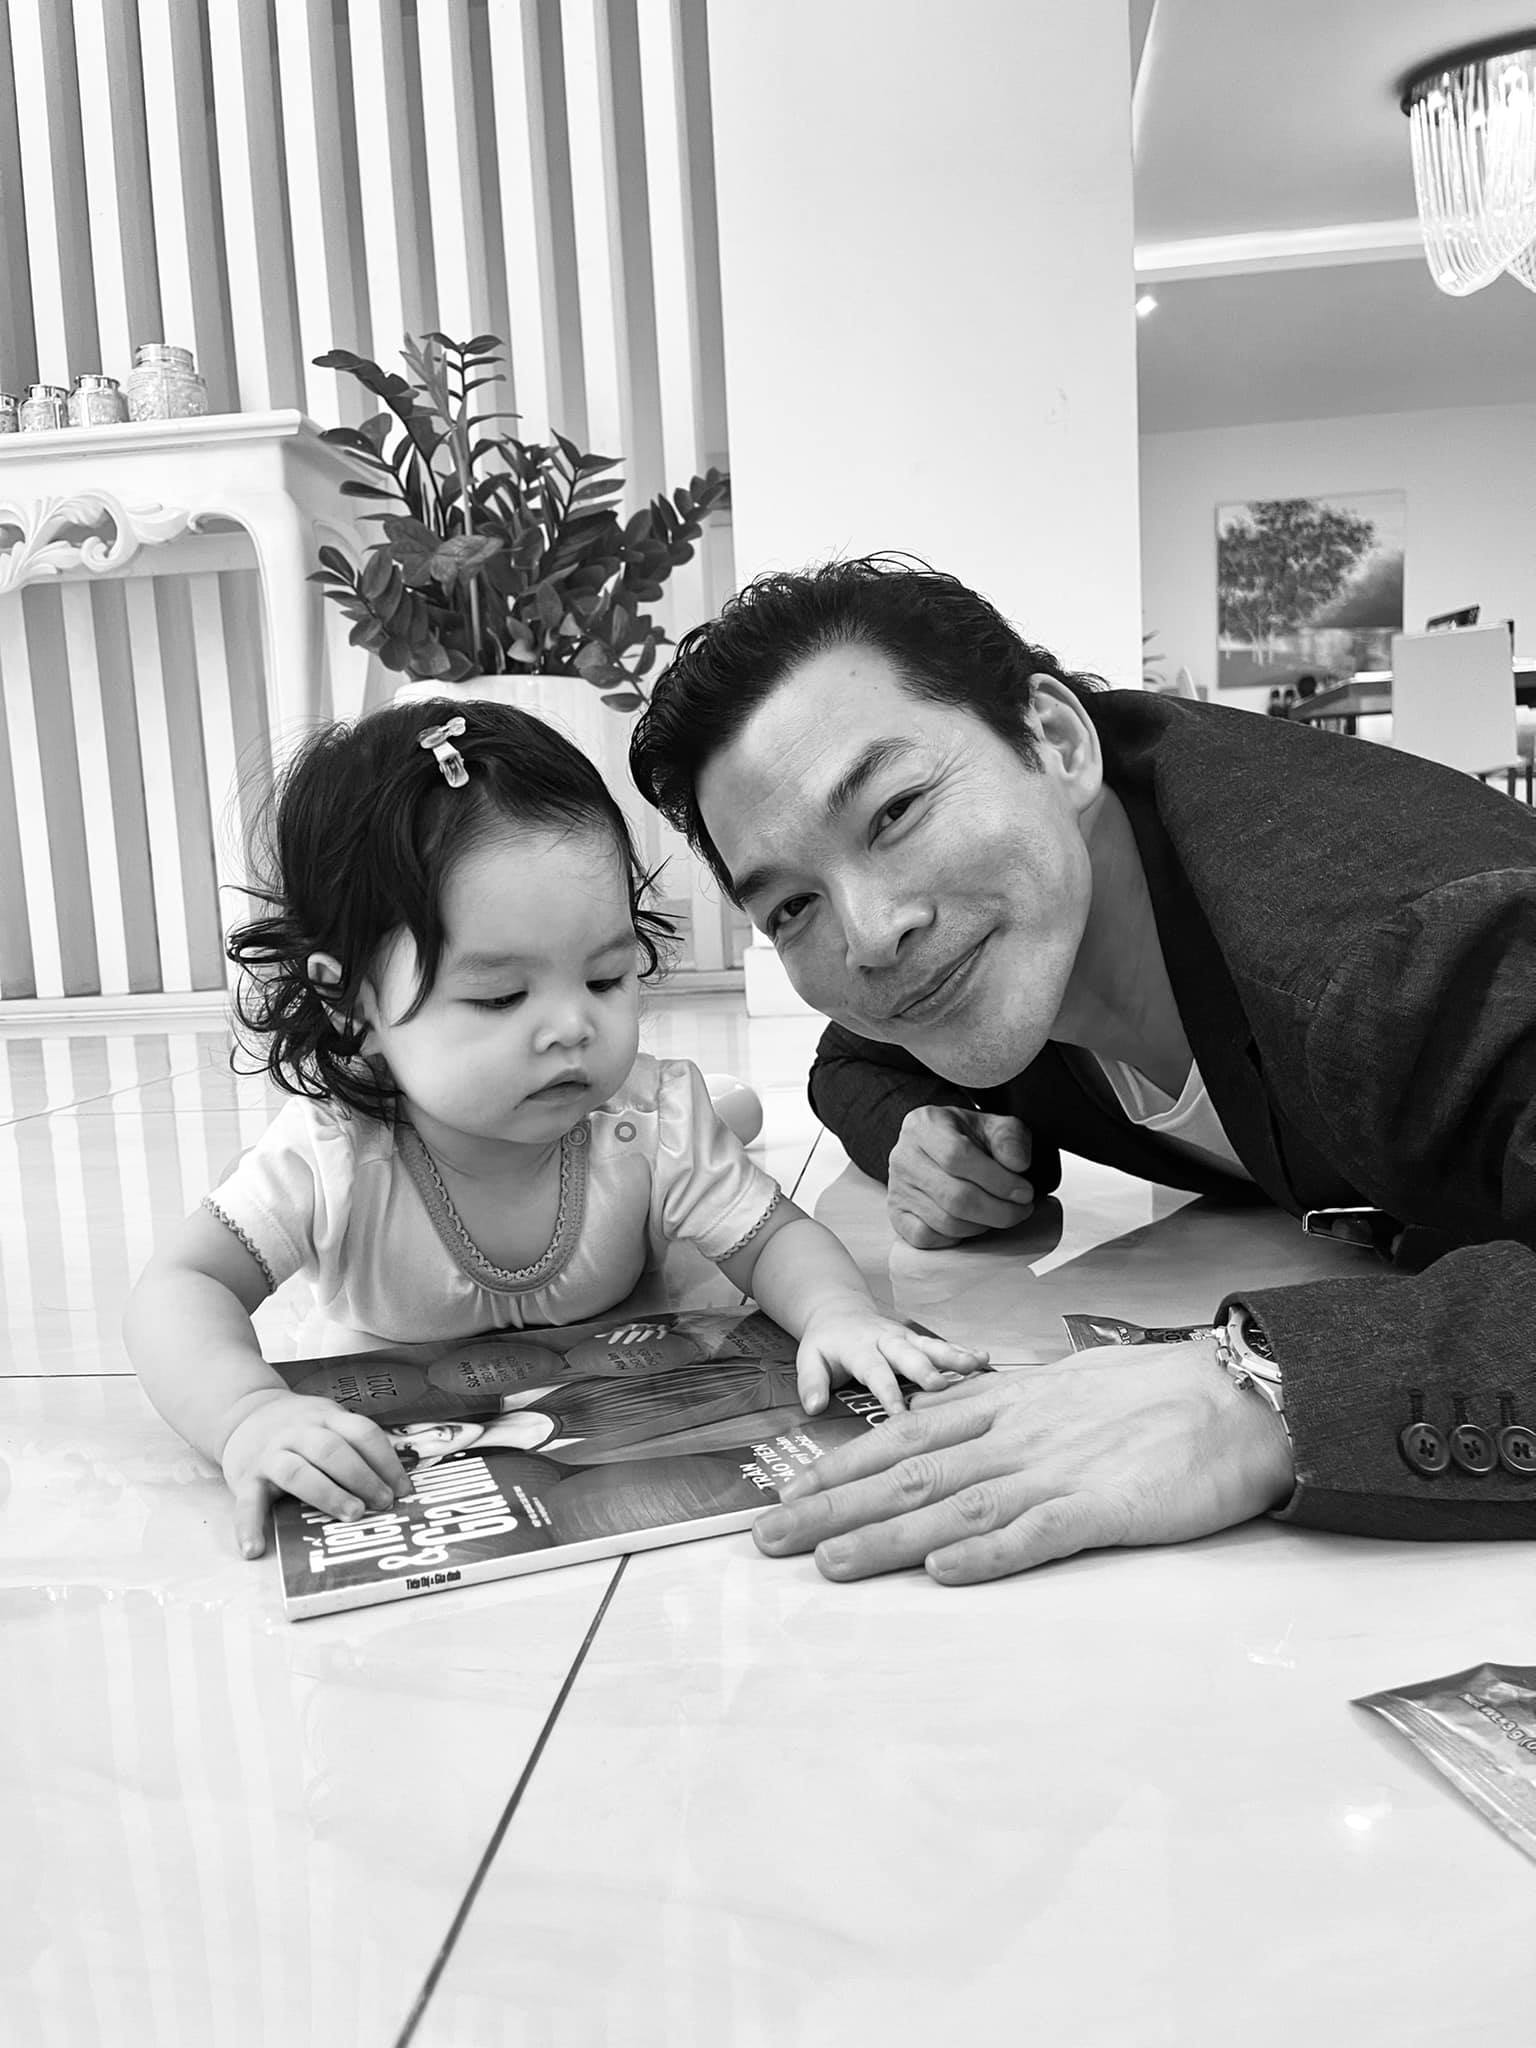 Trần Bảo Sơn đăng tải những bức ảnh của cô con gái thứ hai 9 tháng tuổi tên là Kendall Trần sau thời gian kín tiếng.